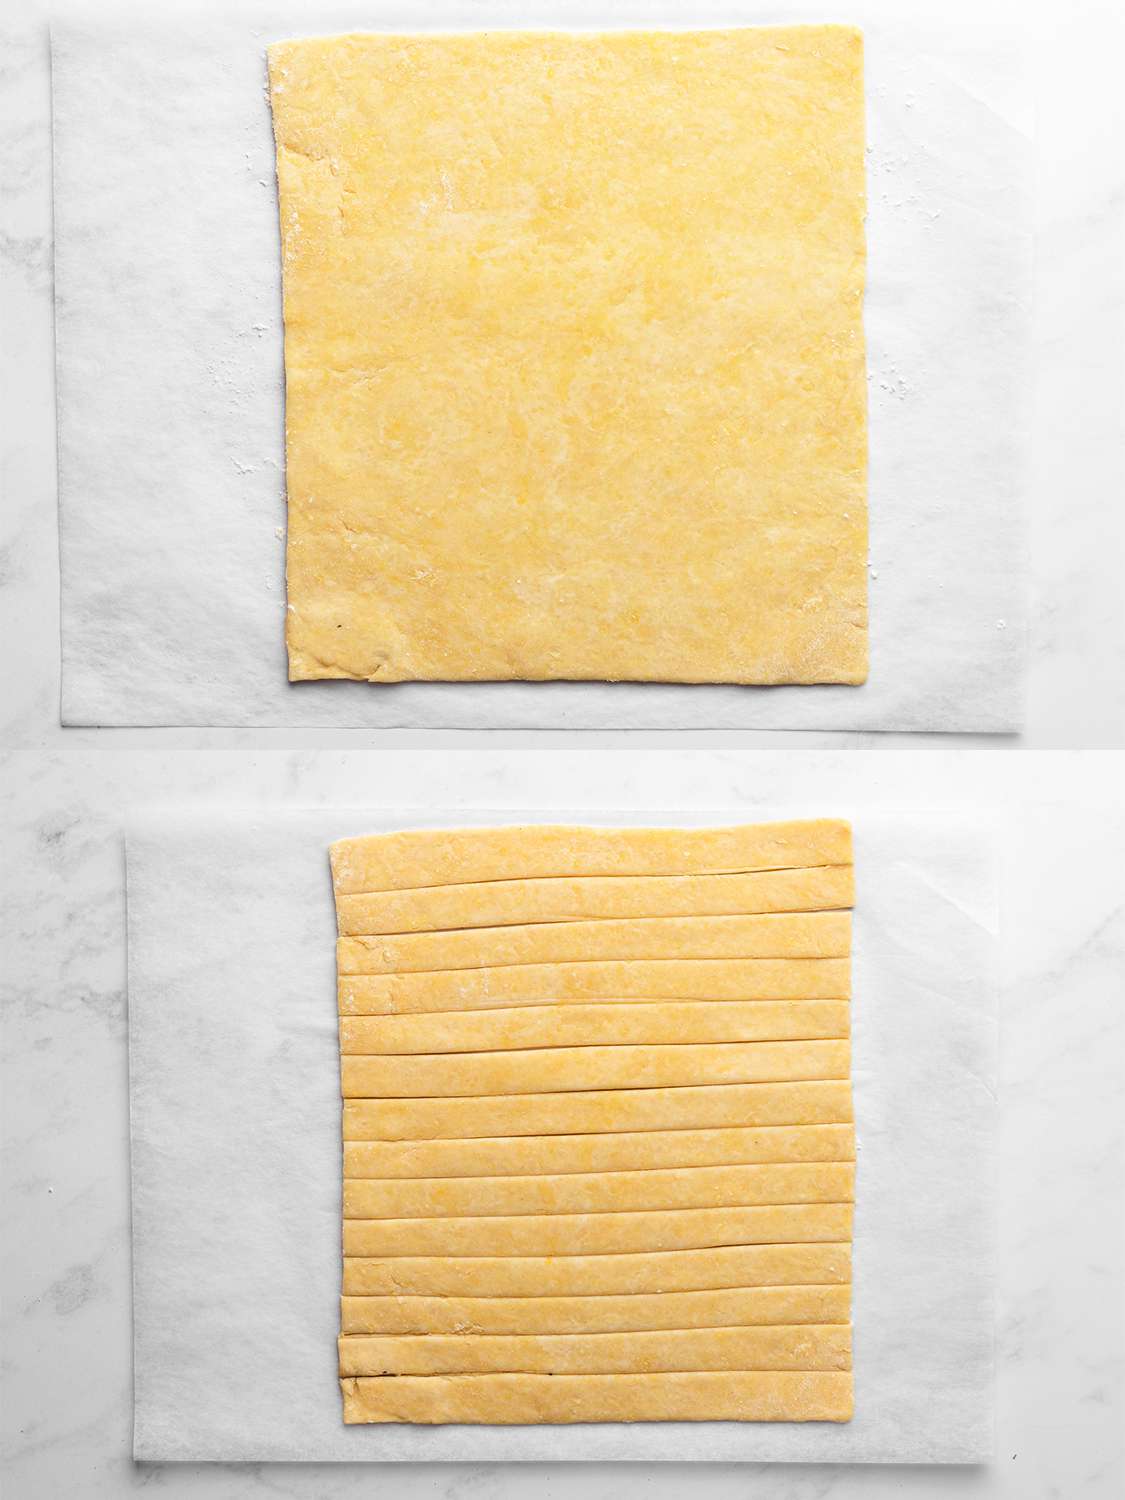 垂直的两幅图像拼贴。上图显示的是在羊皮纸上擀出的方形面团。下图显示的是同样的面团，但切成条状。